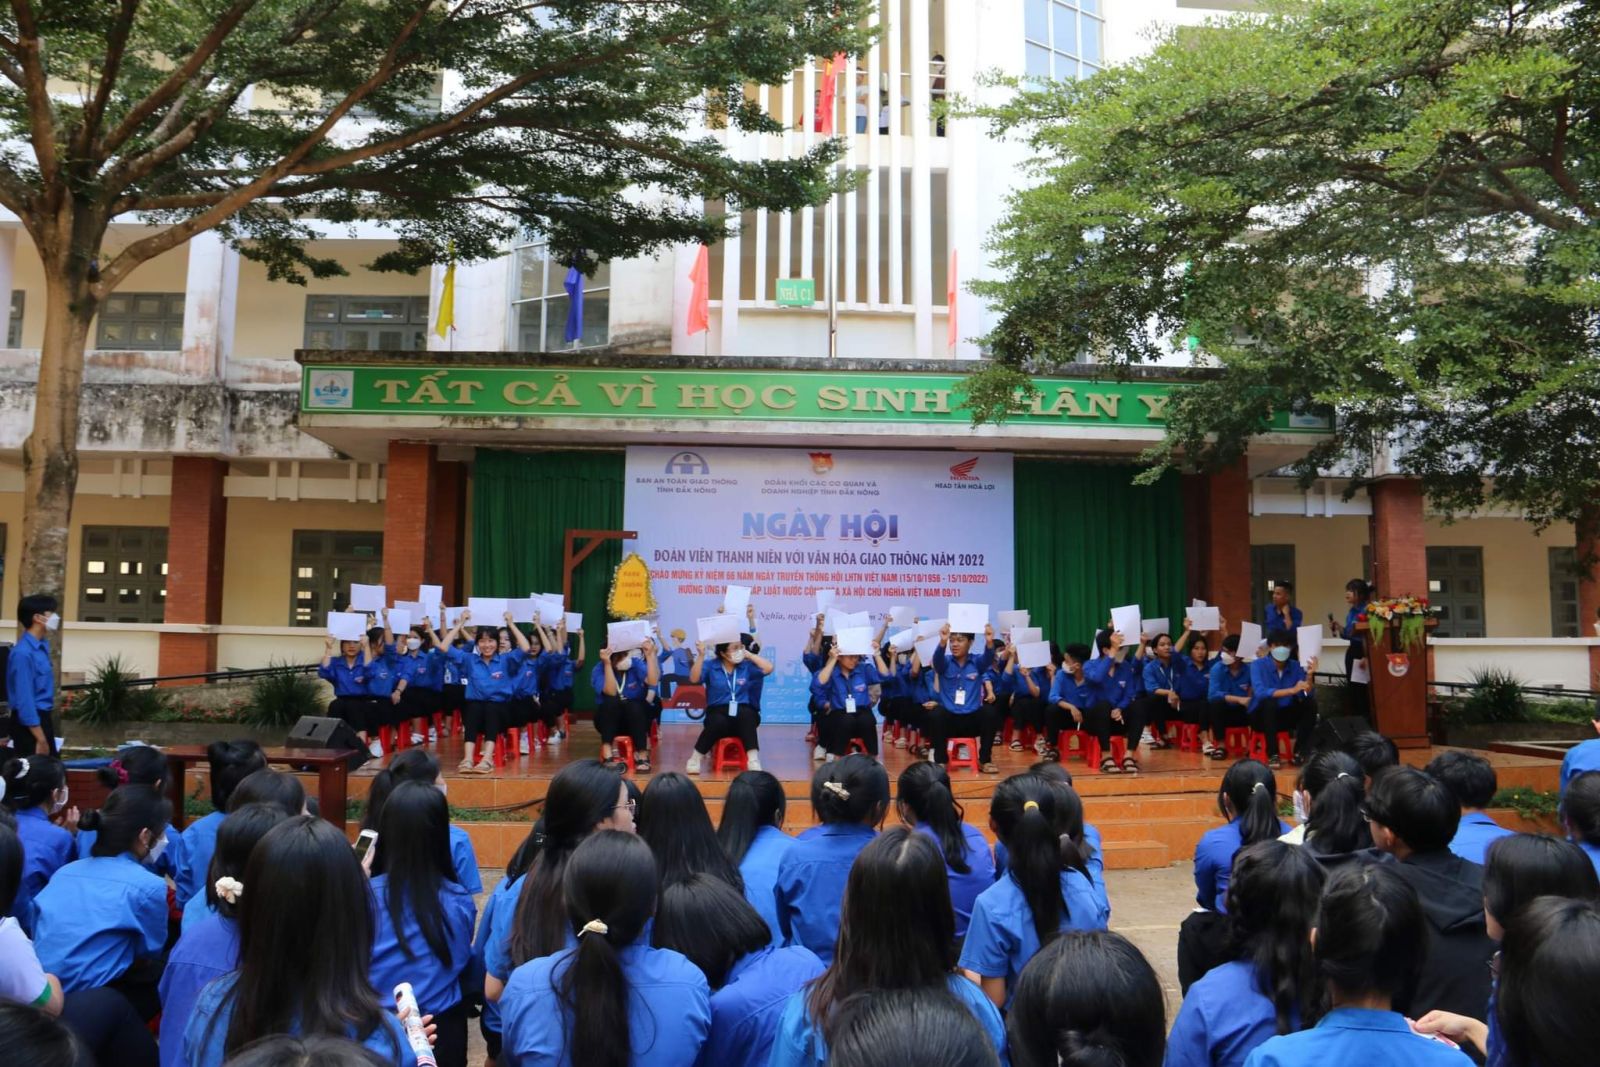 Đoàn Khối các cơ quan và doanh nghiệp tỉnh Đắk Nông tổ chức Ngày hội  đoàn viên, thanh niên với văn hóa giao thông năm 2022